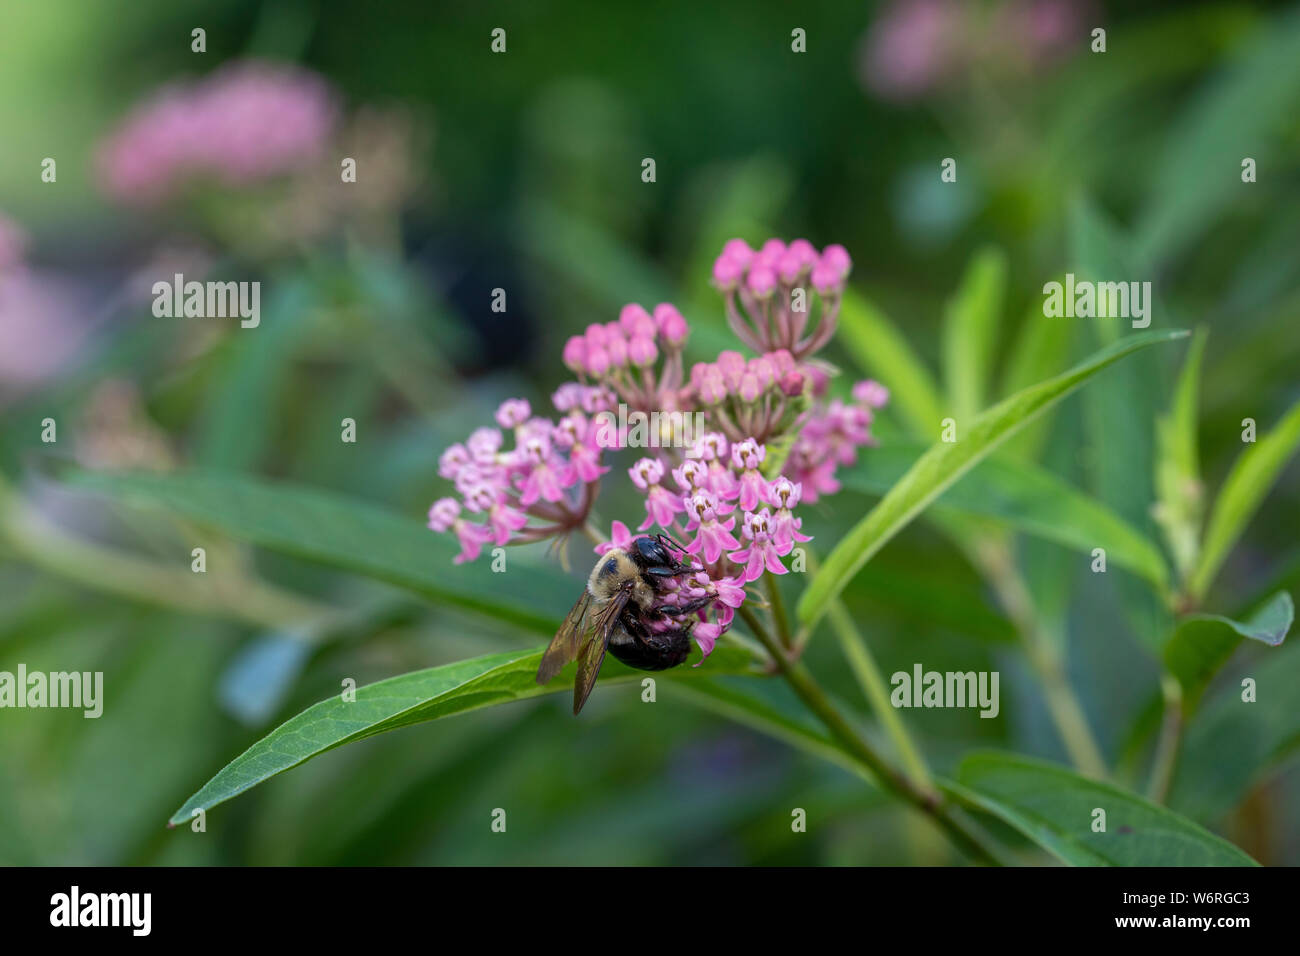 Bumble bee on swamp milkweed Stock Photo